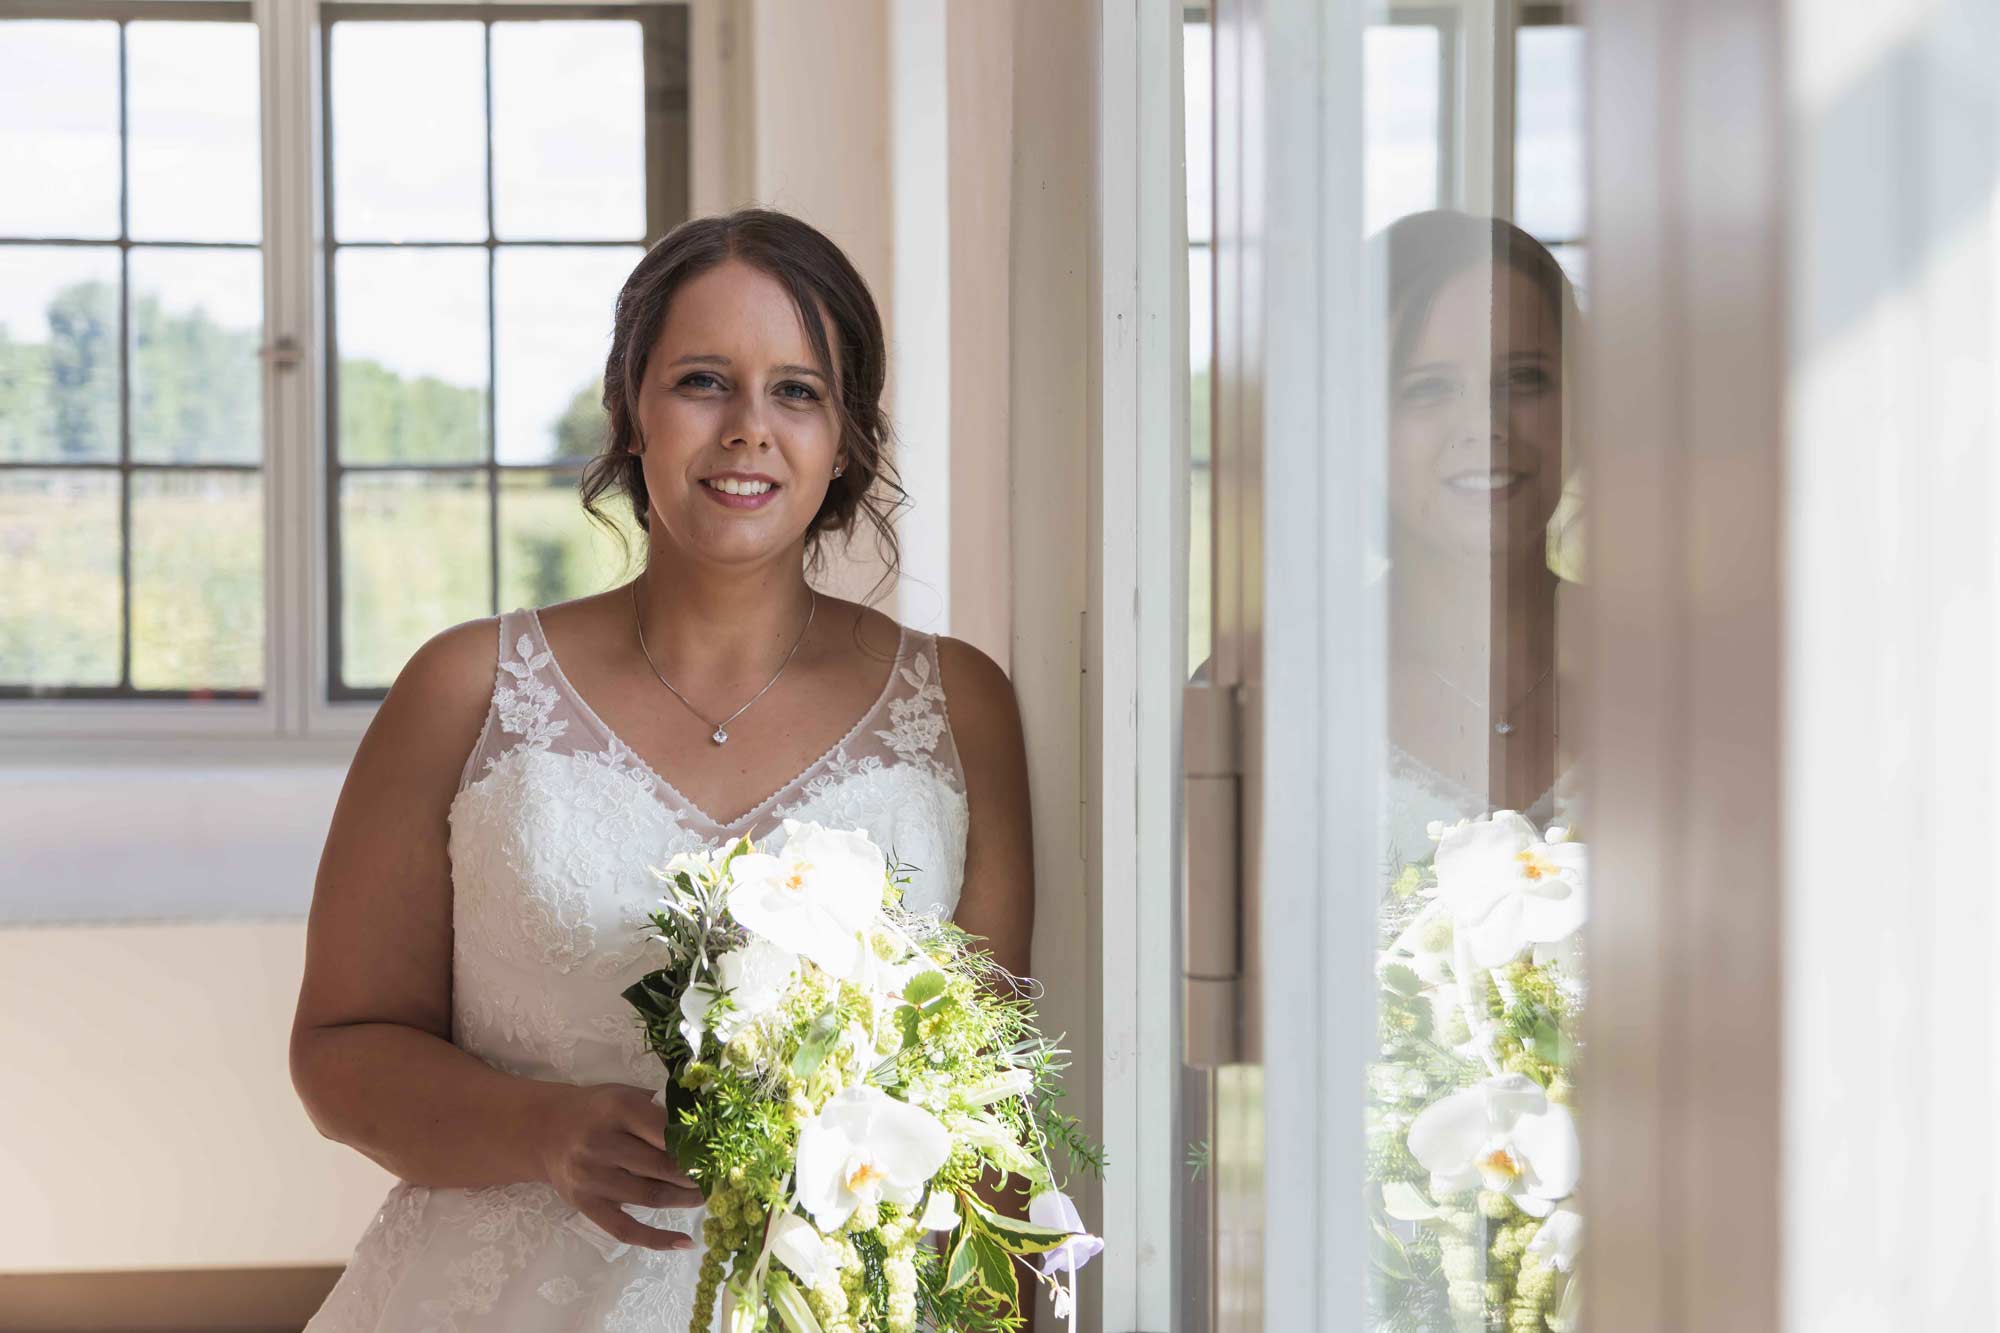 die Braut steht an einem hellen Fensterfront und hält in ihren Händen den Brautstrauß. Sie sieht sehr glücklich aus und wartet auf ihren zukünfitgen mann